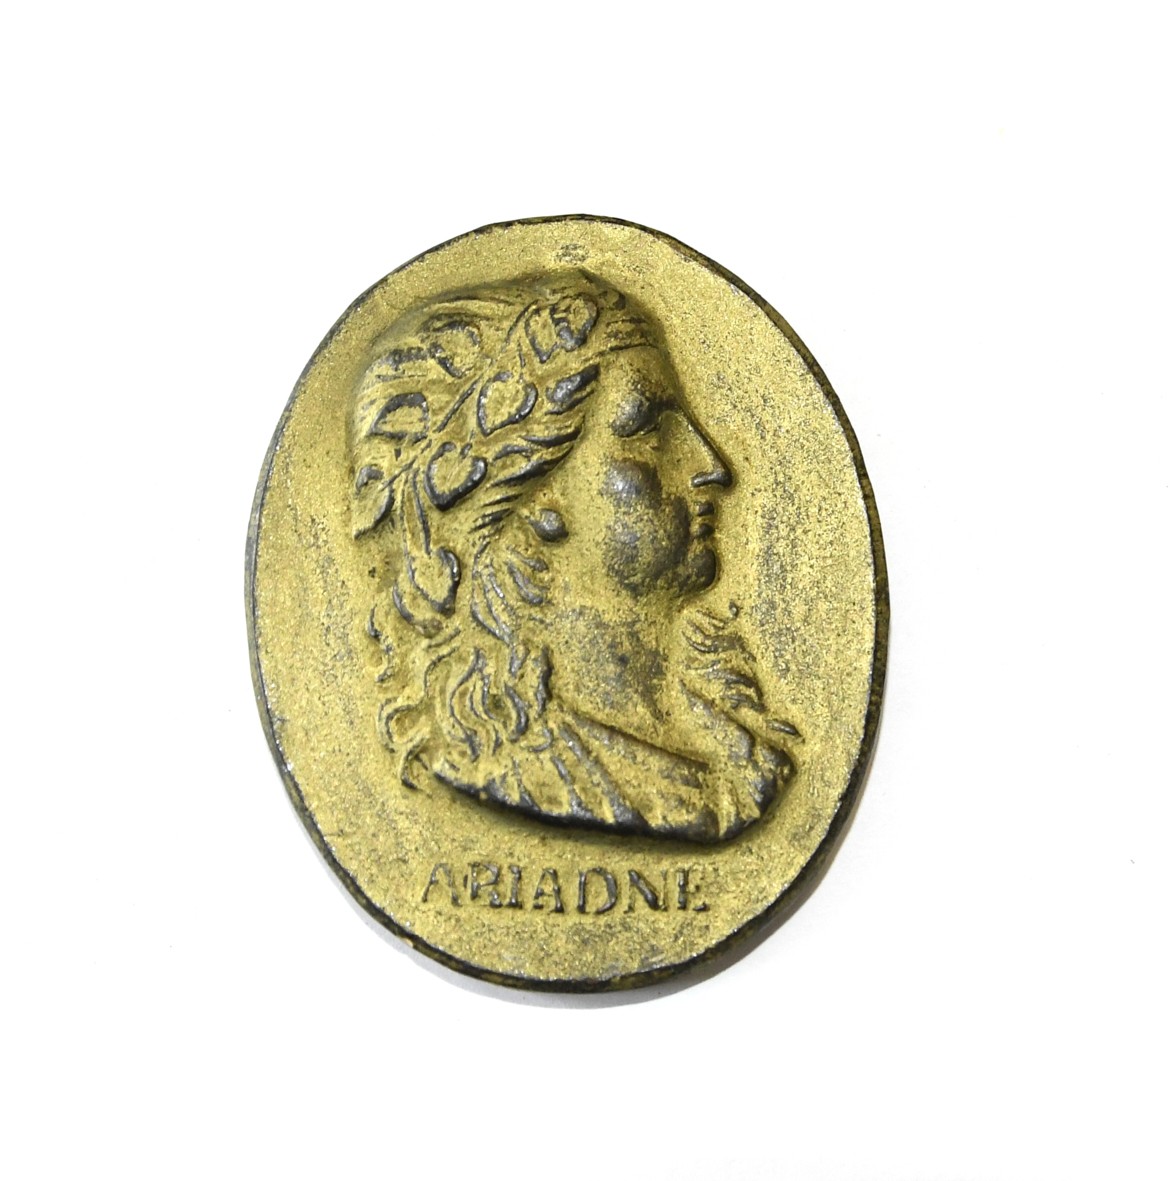 Ariadne ((C) Sammlung Bergischer Geschichtsverein e.V. CC BY-NC)